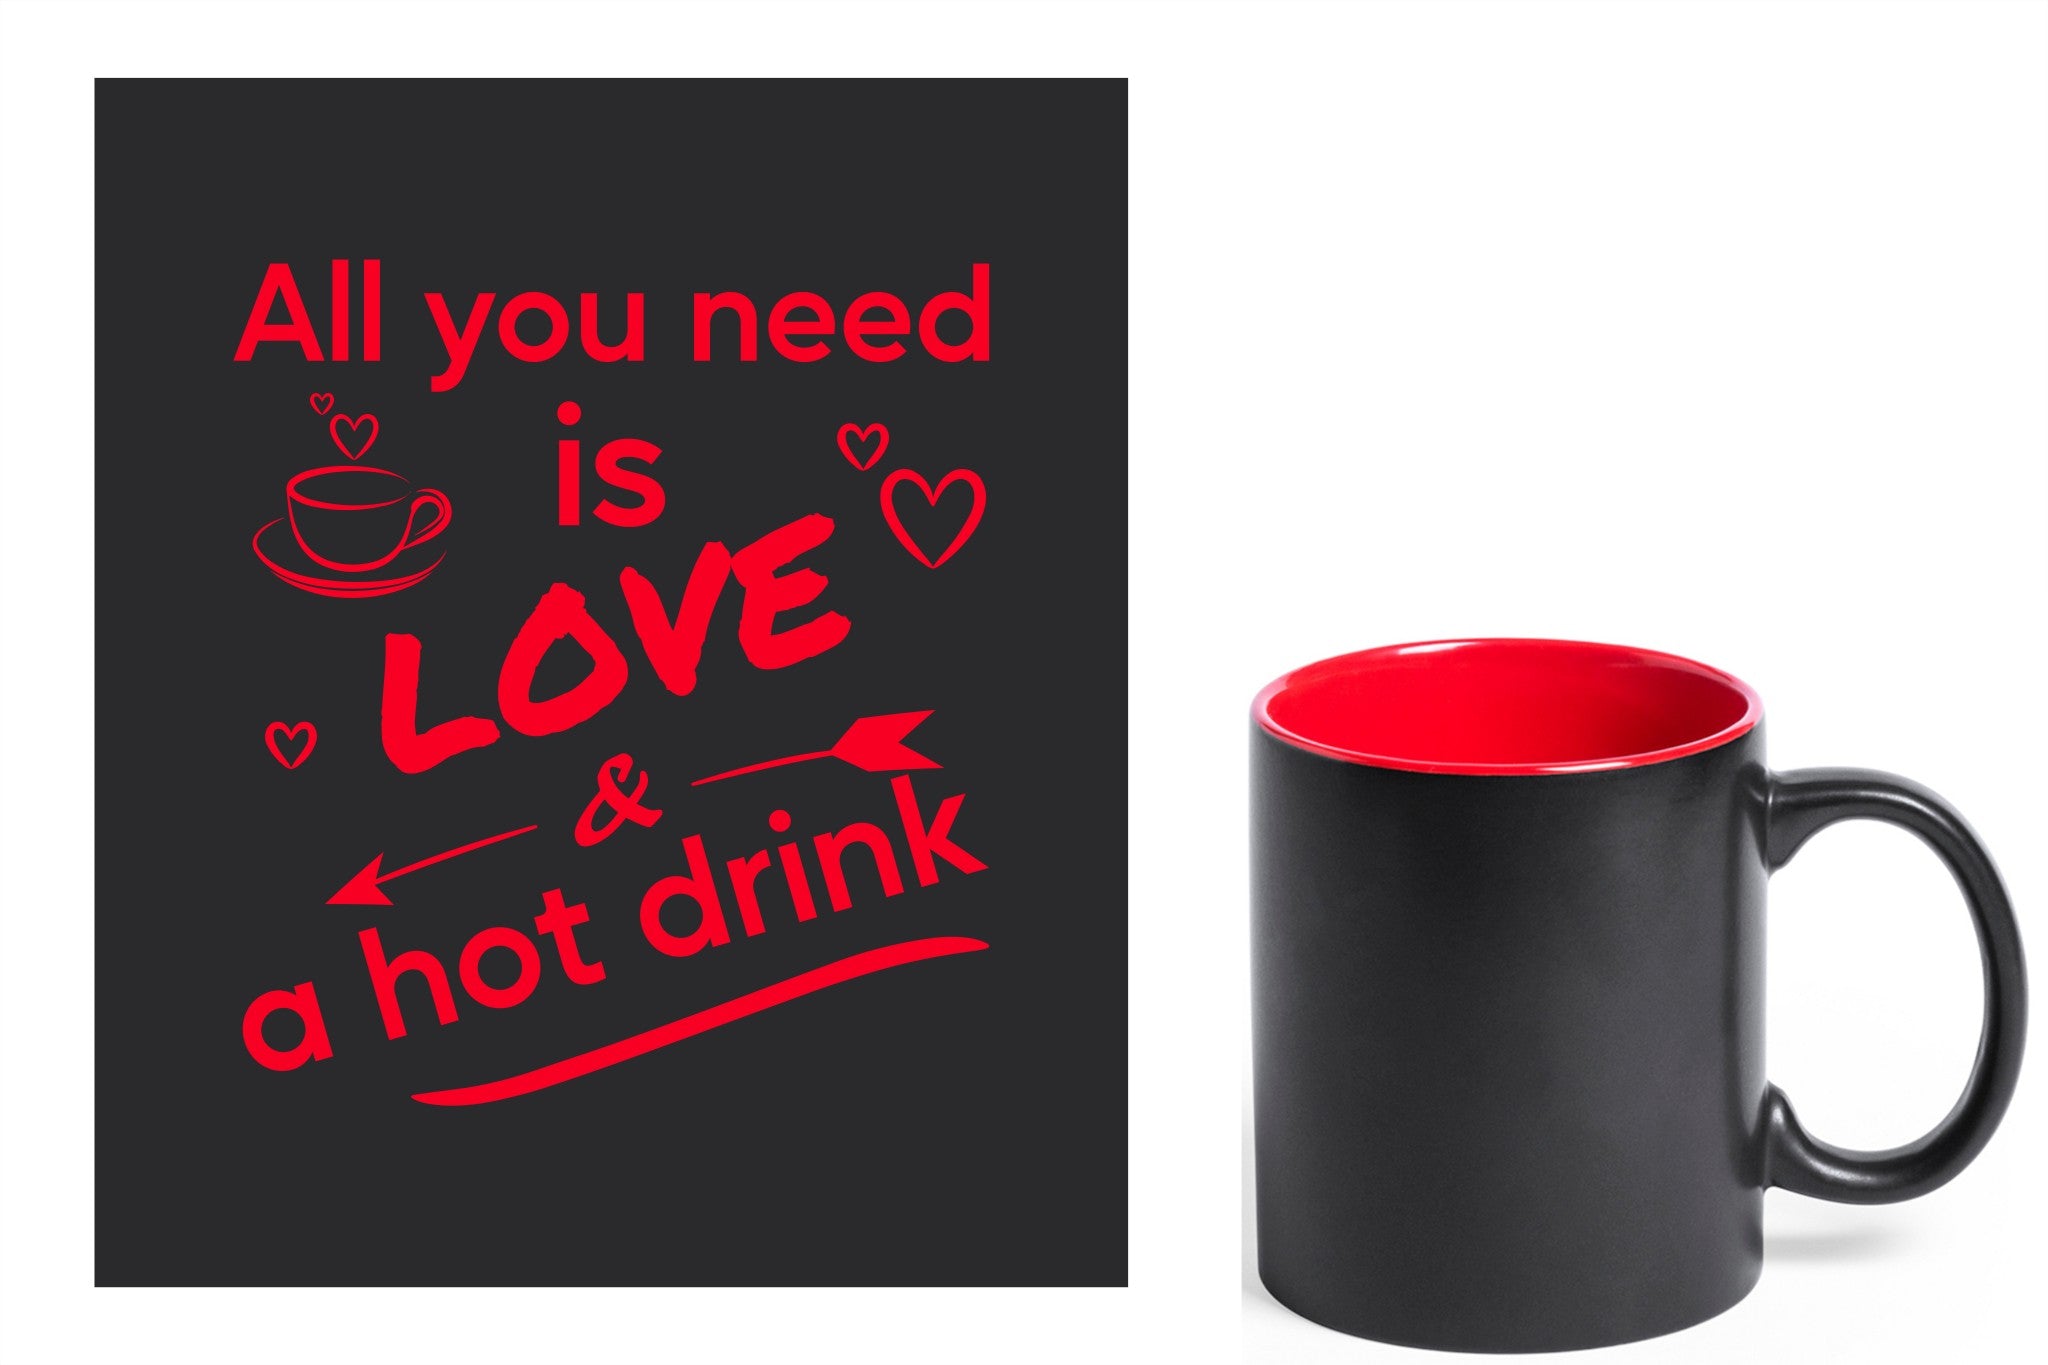 zwarte keramische mok met rode gravure  'All you need is love & a hot drink'.